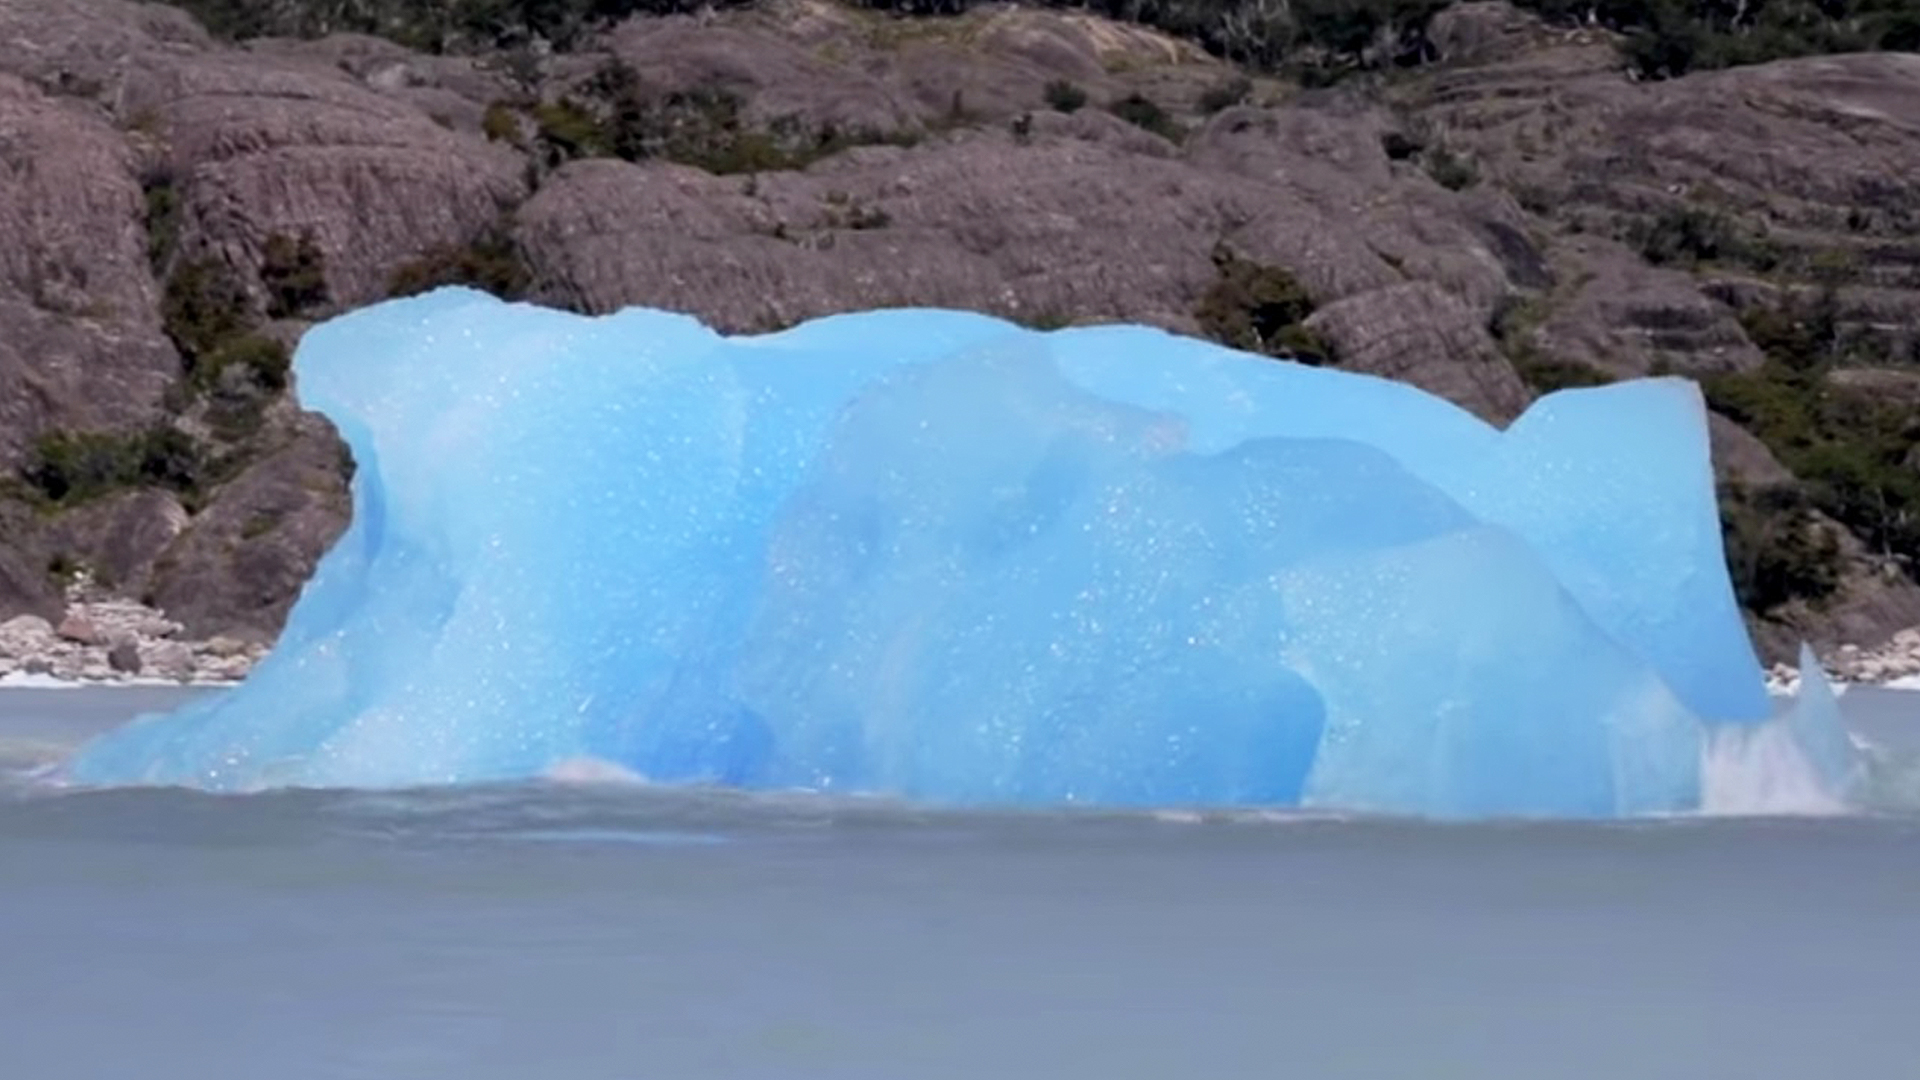 Iceberg Flips Over Revealing Bright Blue Coloring | RTM - RightThisMinute